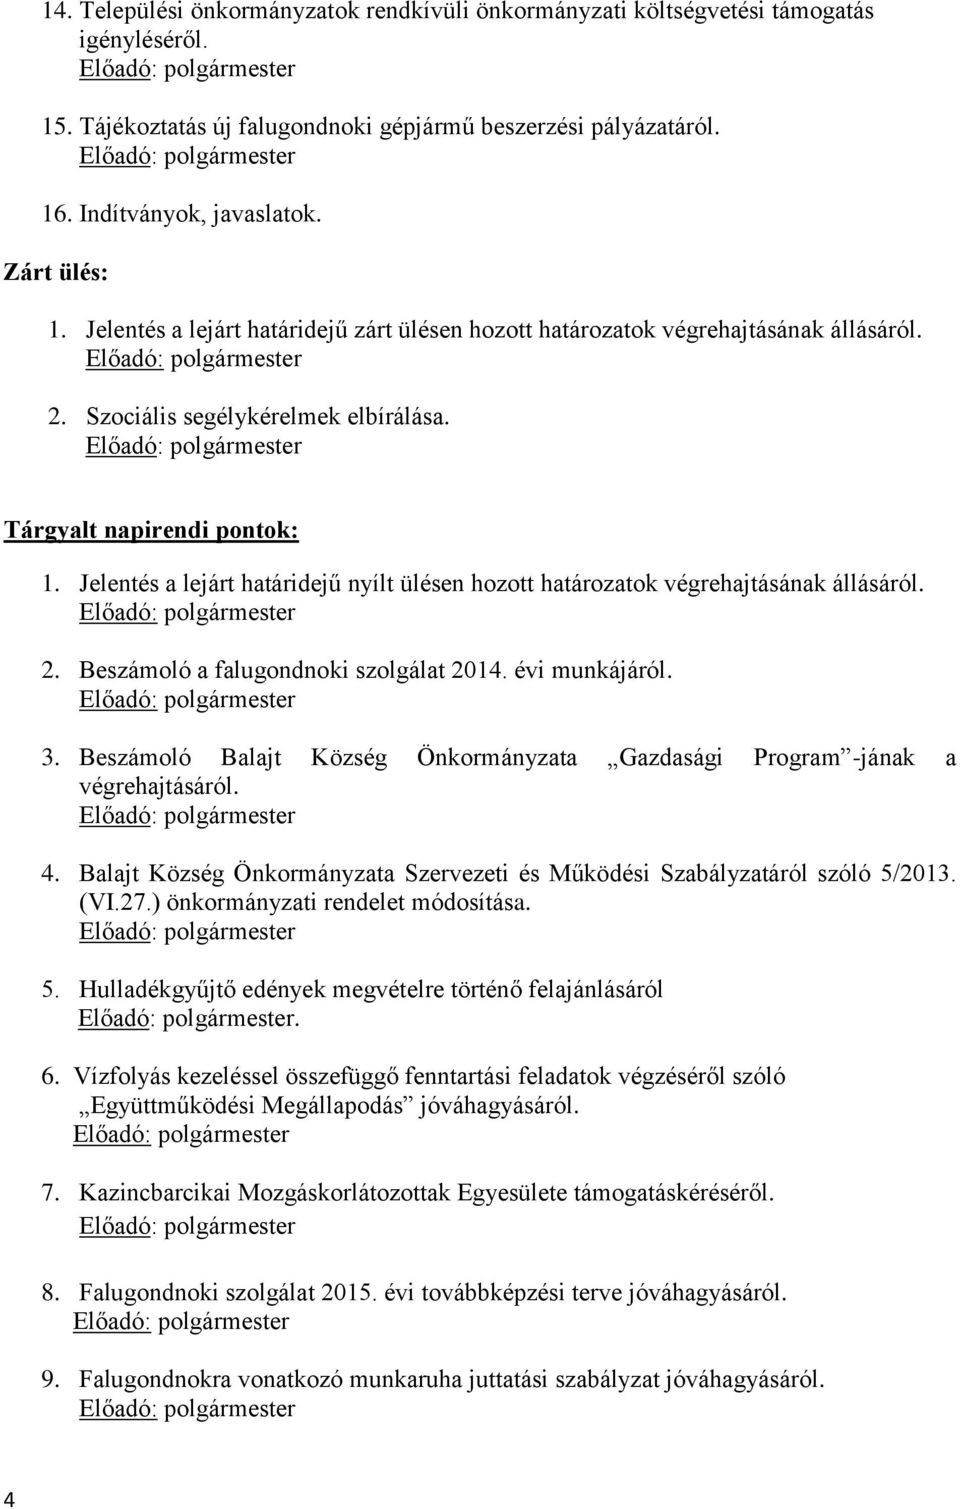 Jelentés a lejárt határidejű nyílt ülésen hozott határozatok végrehajtásának állásáról. 2. Beszámoló a falugondnoki szolgálat 2014. évi munkájáról. 3.